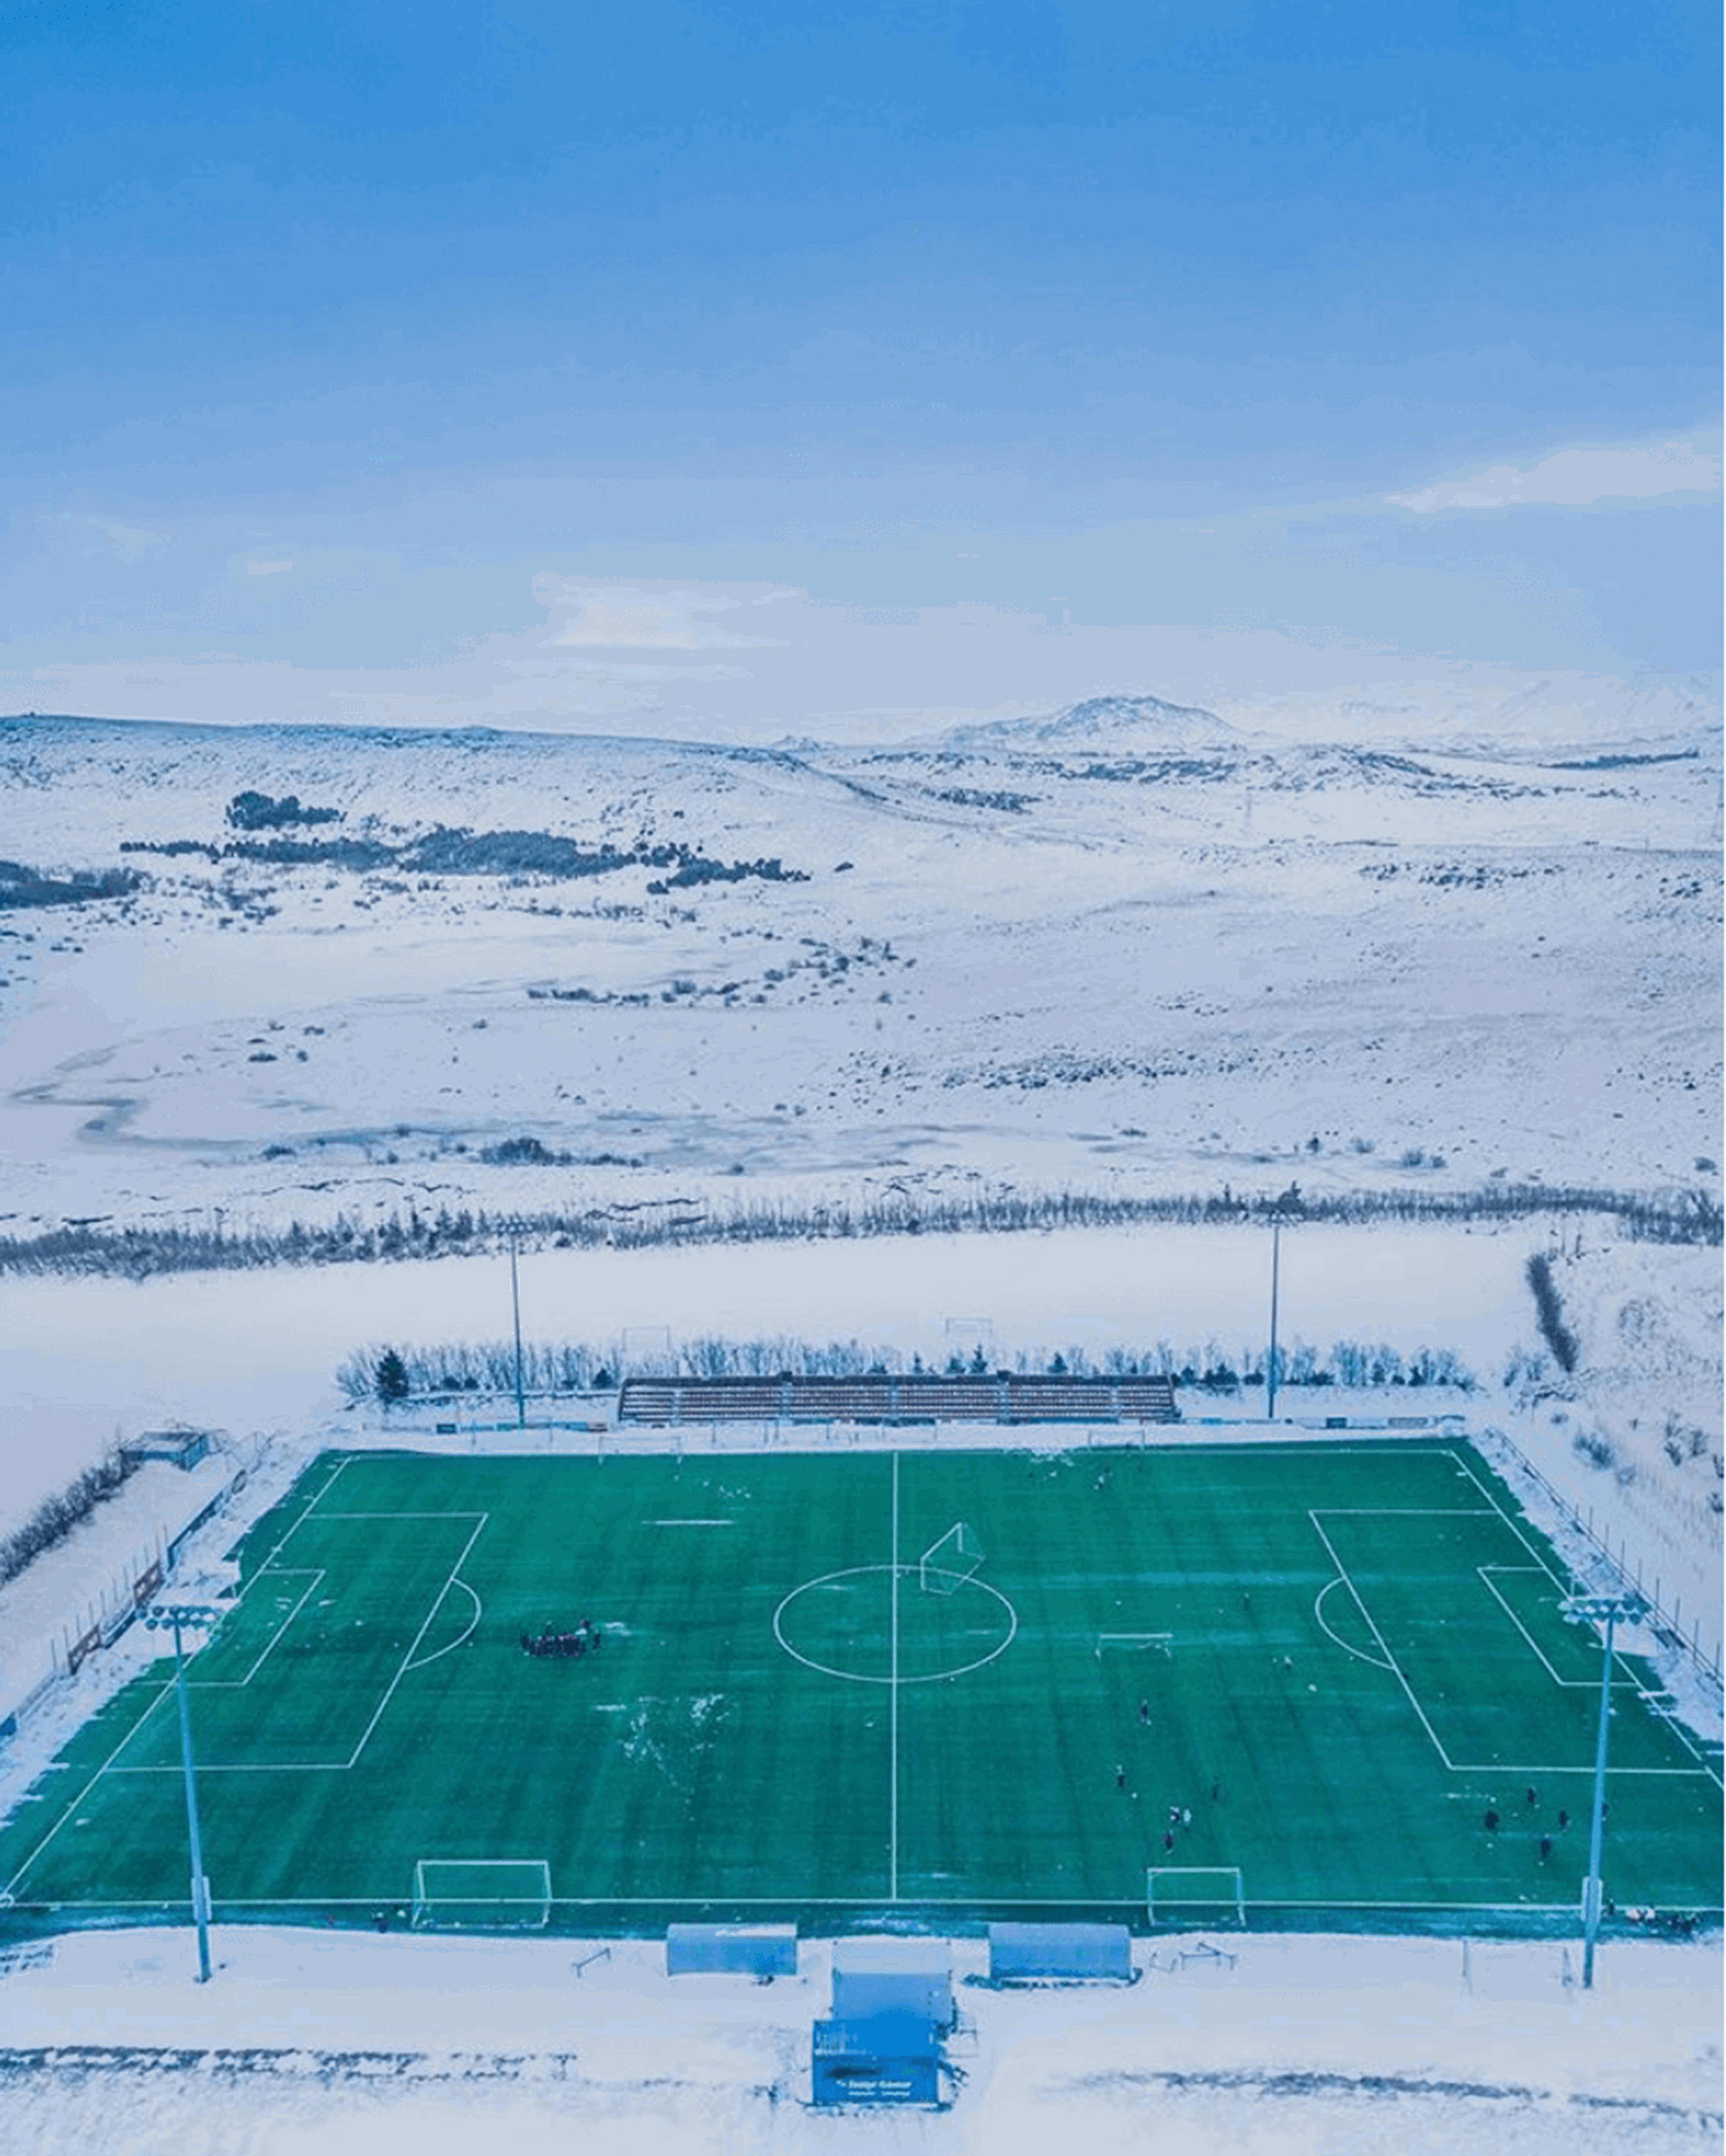 Iceland soccer stadium memorabilia